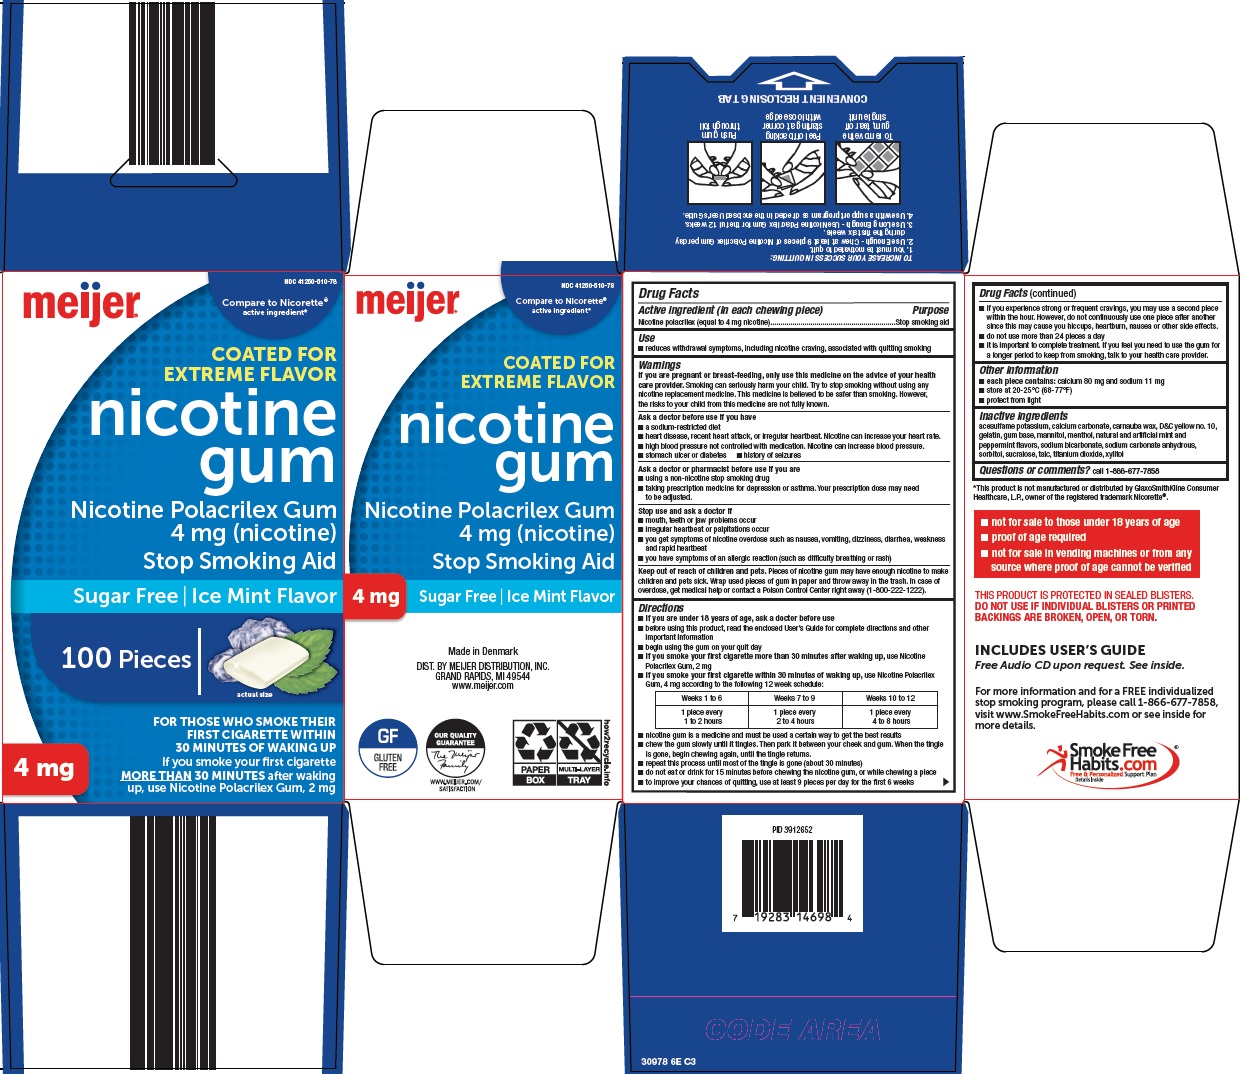 309-6e-nicotine gum